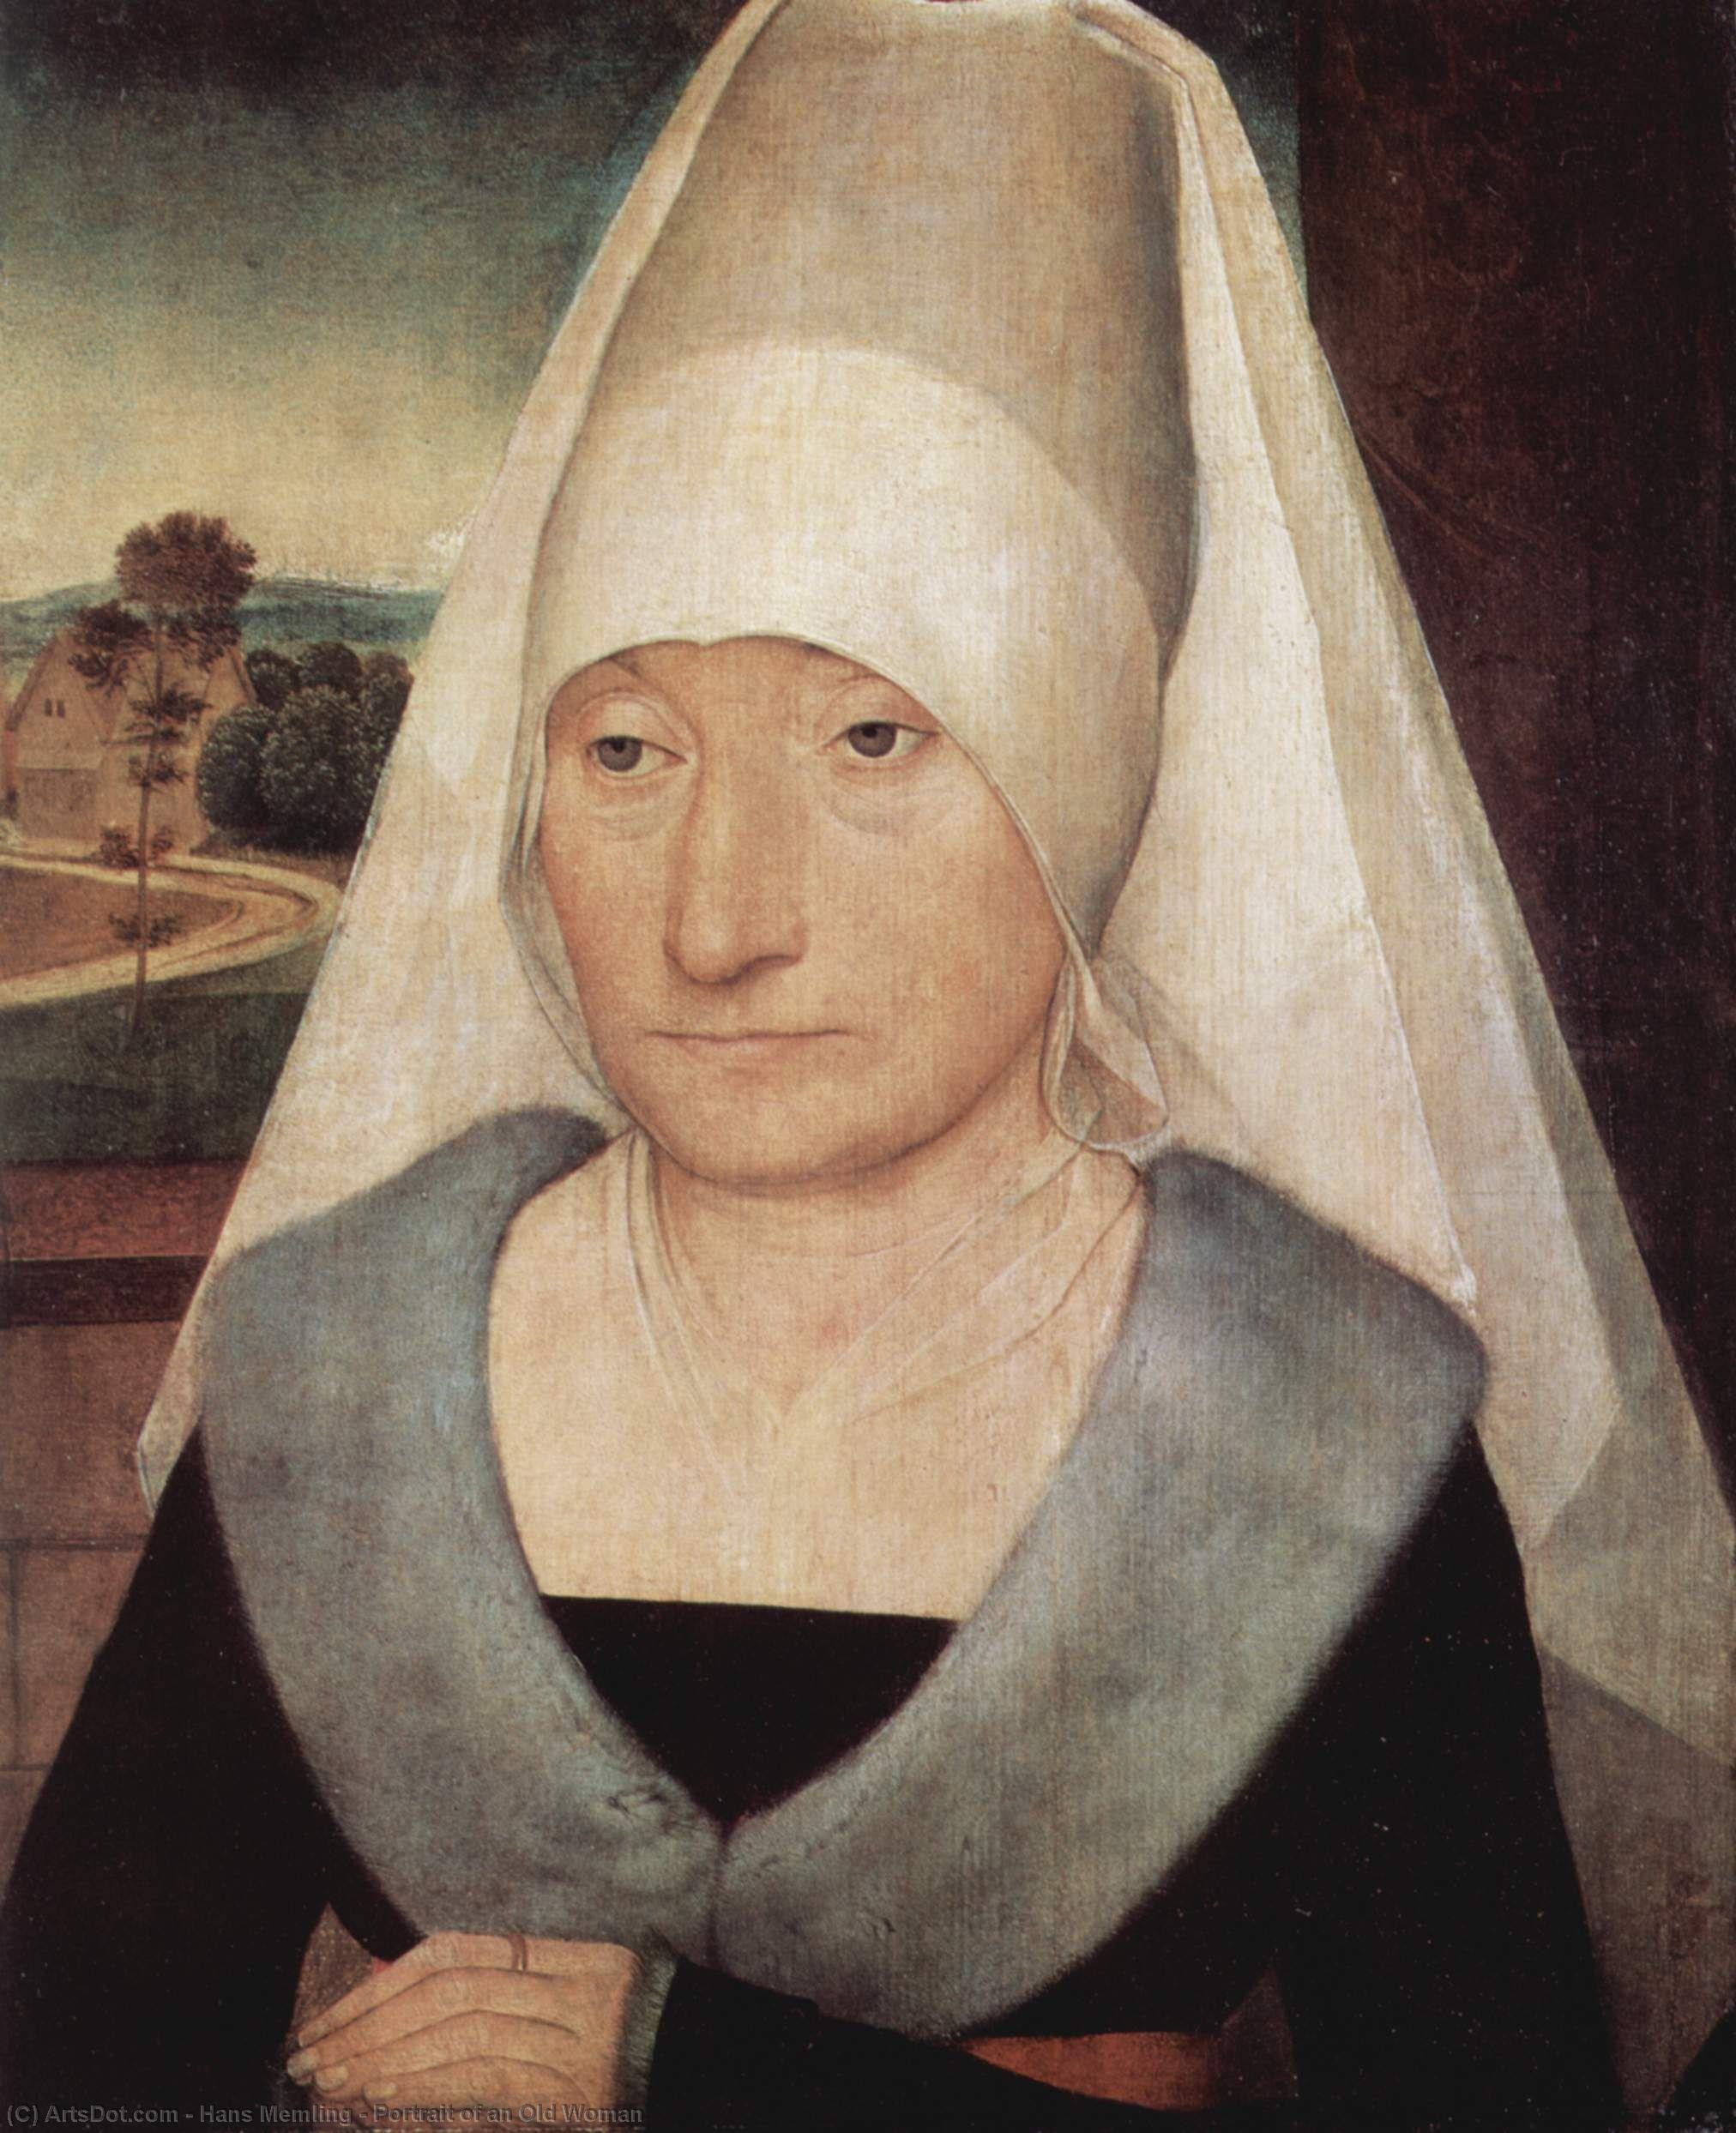 WikiOO.org - אנציקלופדיה לאמנויות יפות - ציור, יצירות אמנות Hans Memling - Portrait of an Old Woman